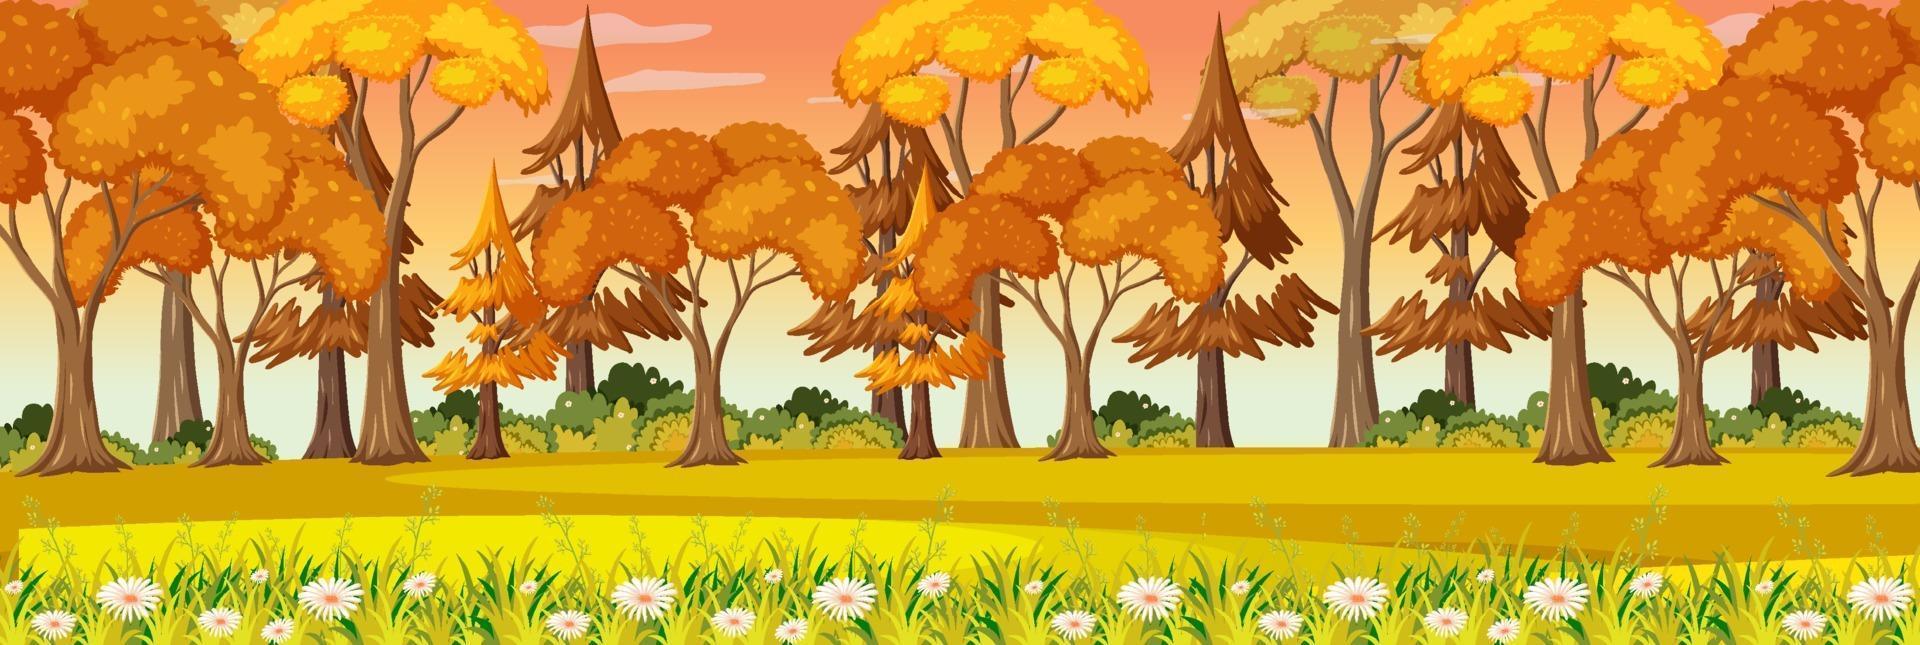 escena del paisaje horizontal del parque de otoño vector